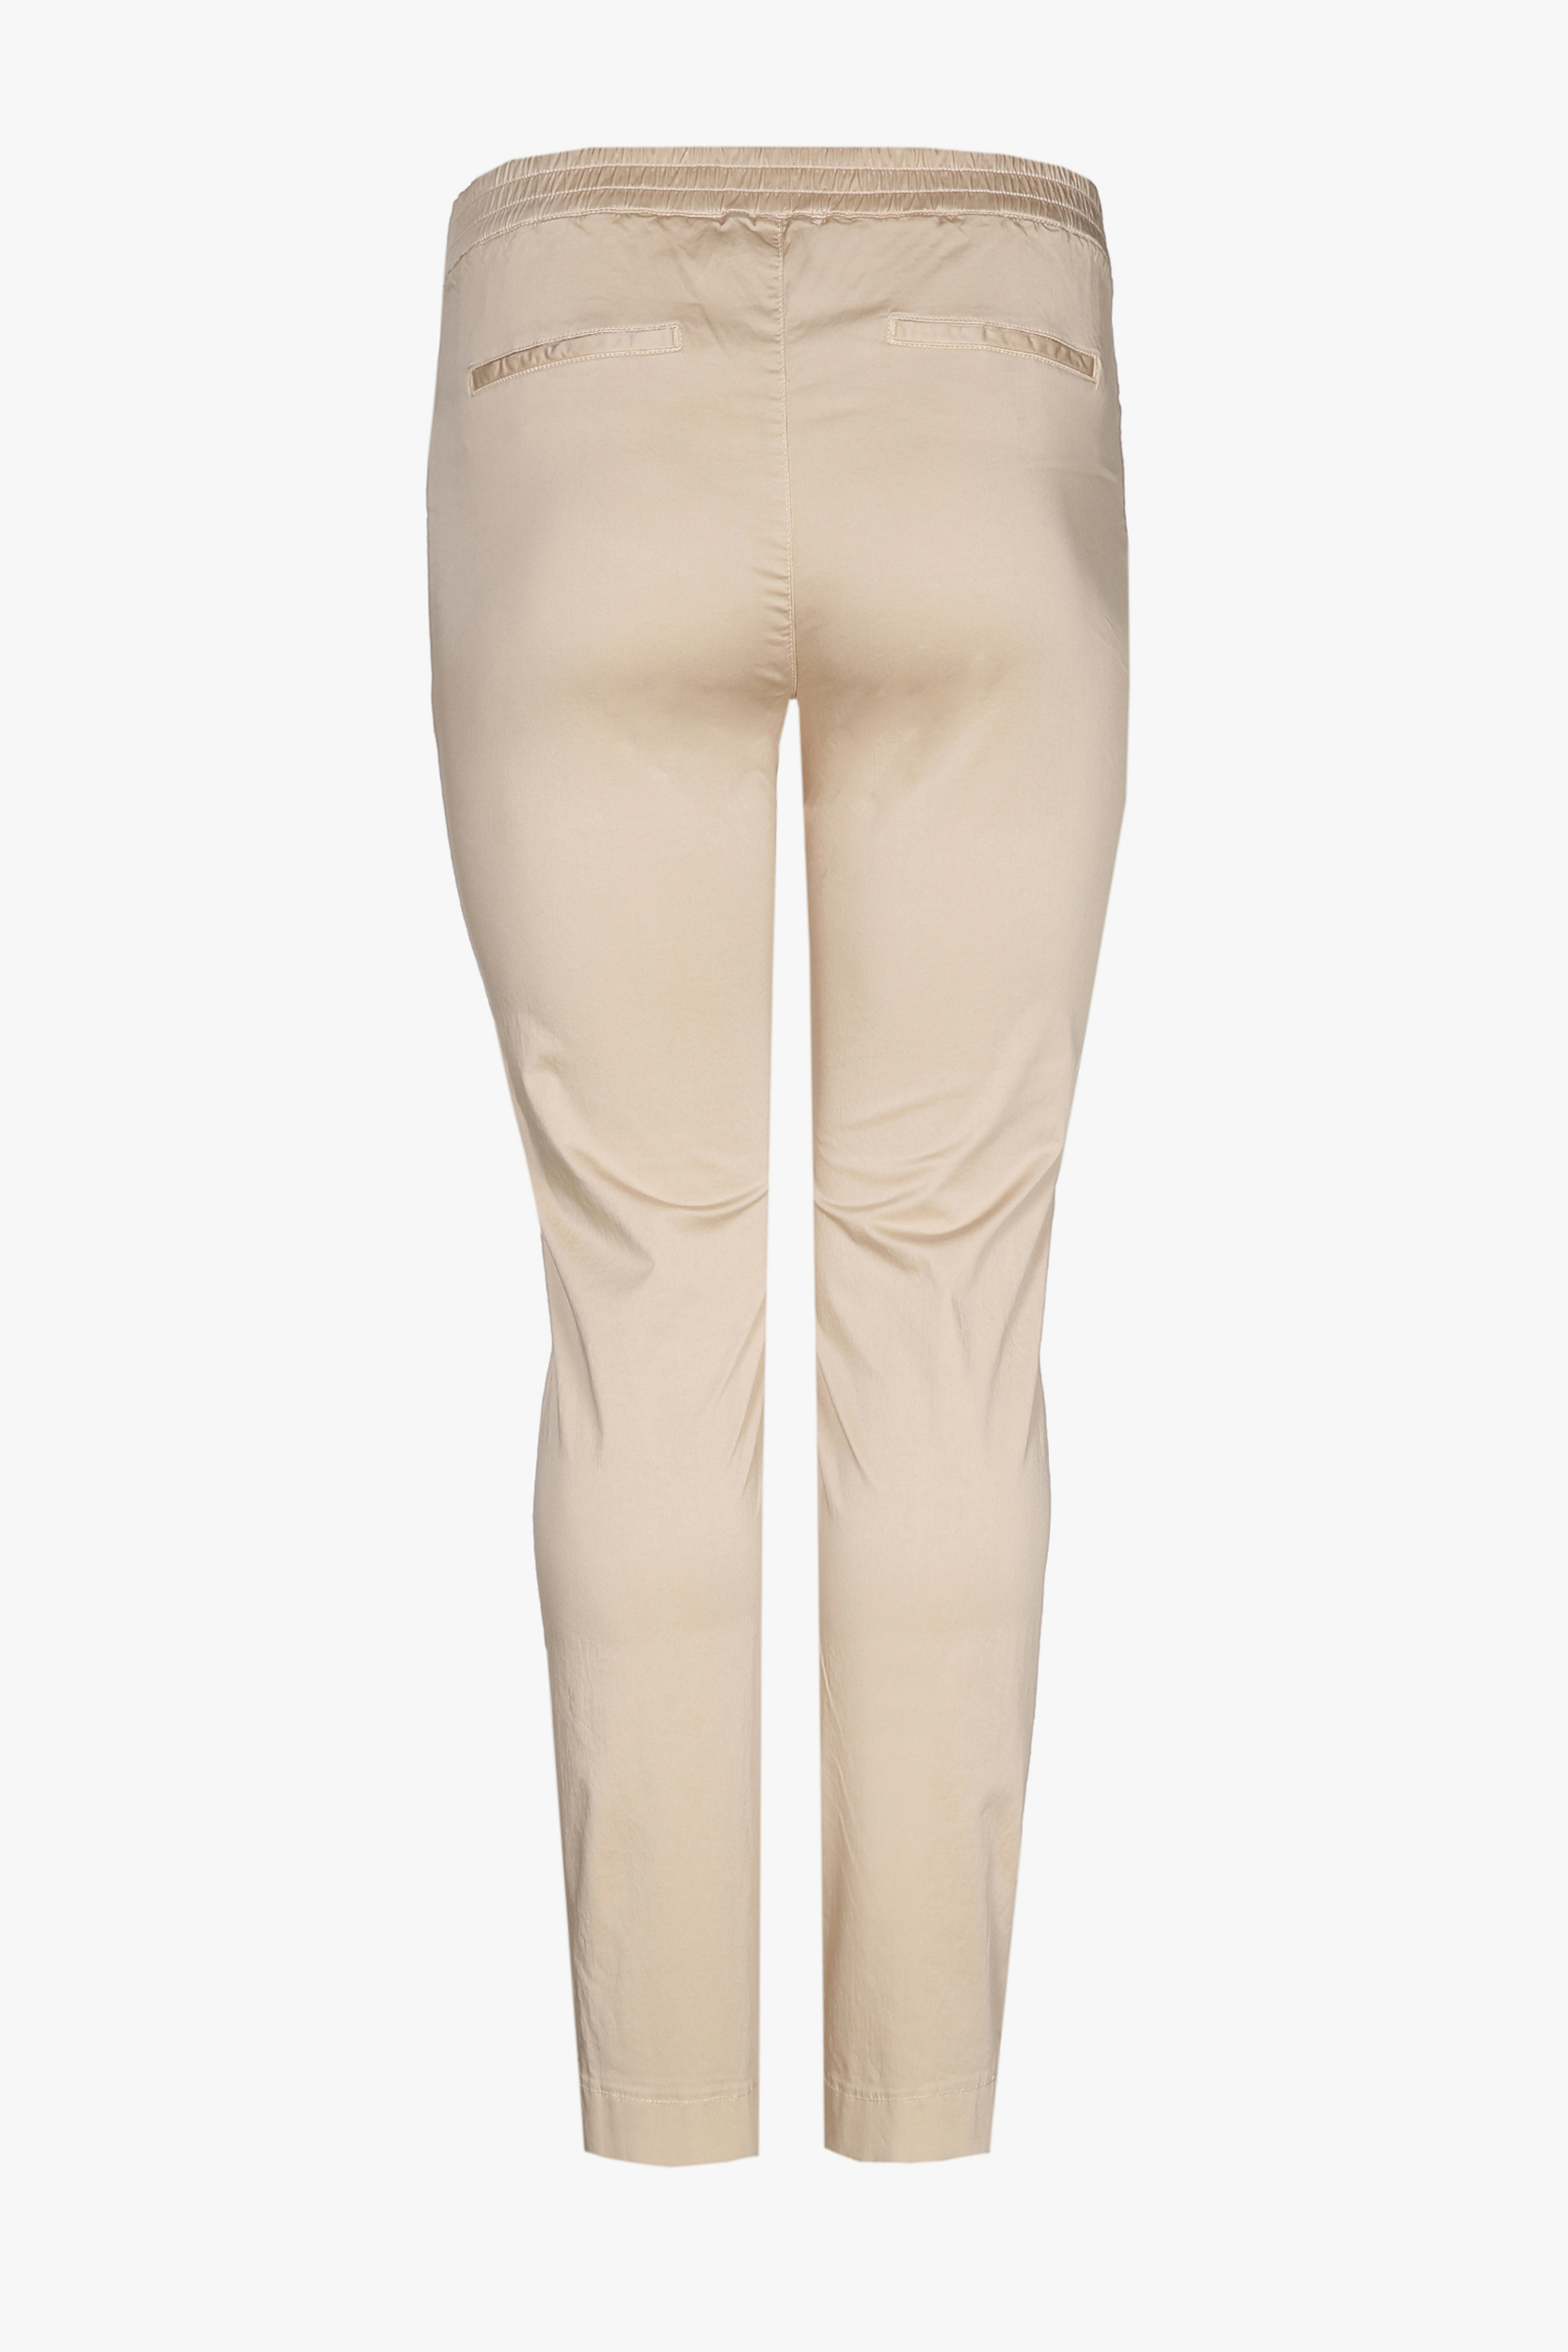 Pantalon en coton beige à coupe ajustée